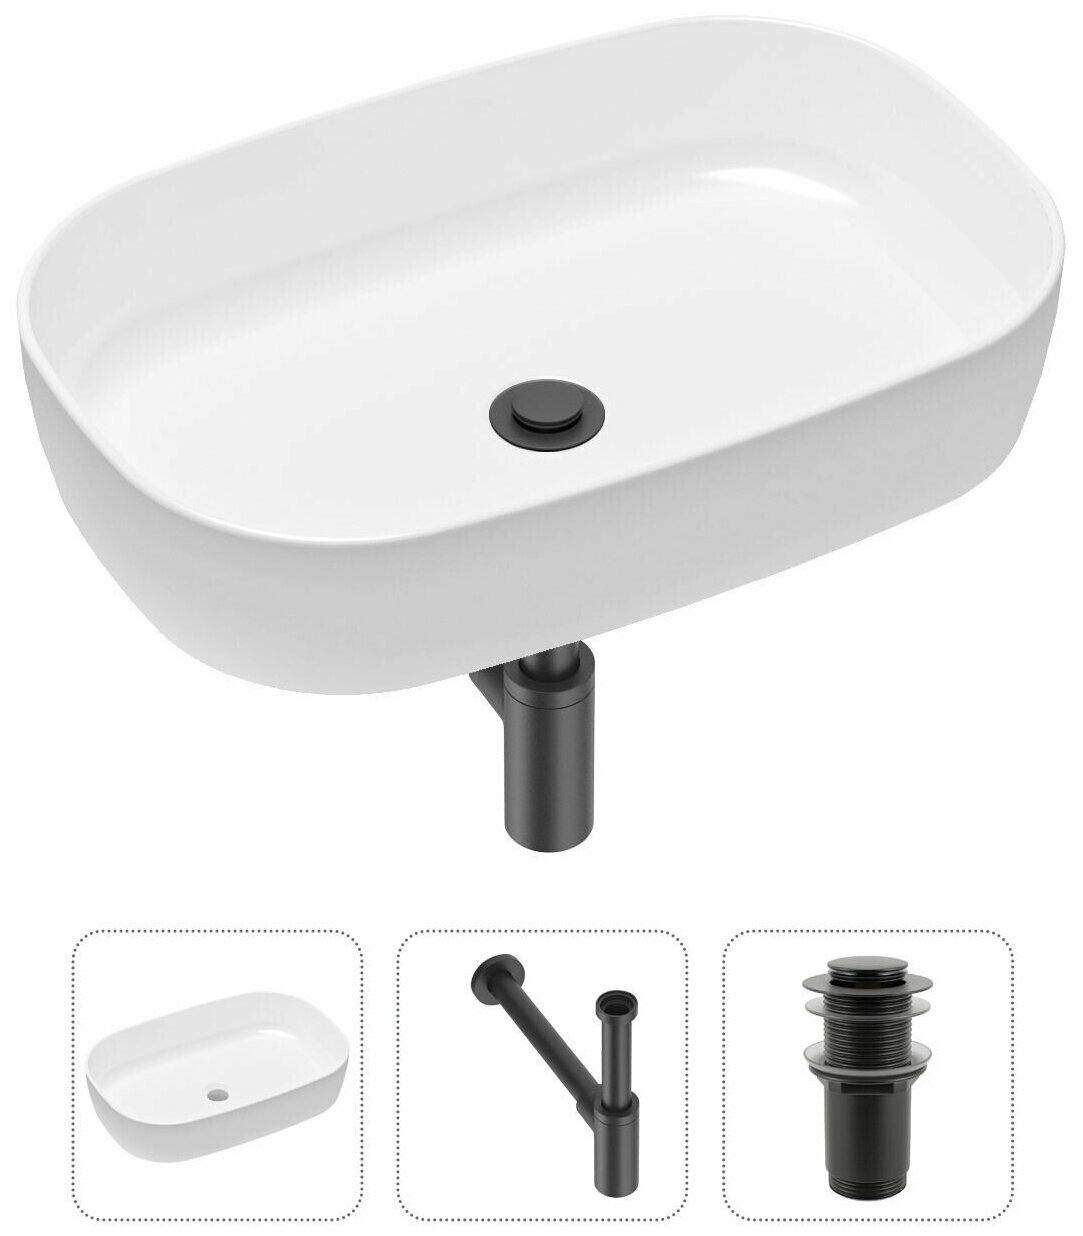 Комплект 3 в 1 Lavinia Boho Bathroom Sink 21520061: накладная фарфоровая раковина 54 см, металлический сифон, донный клапан